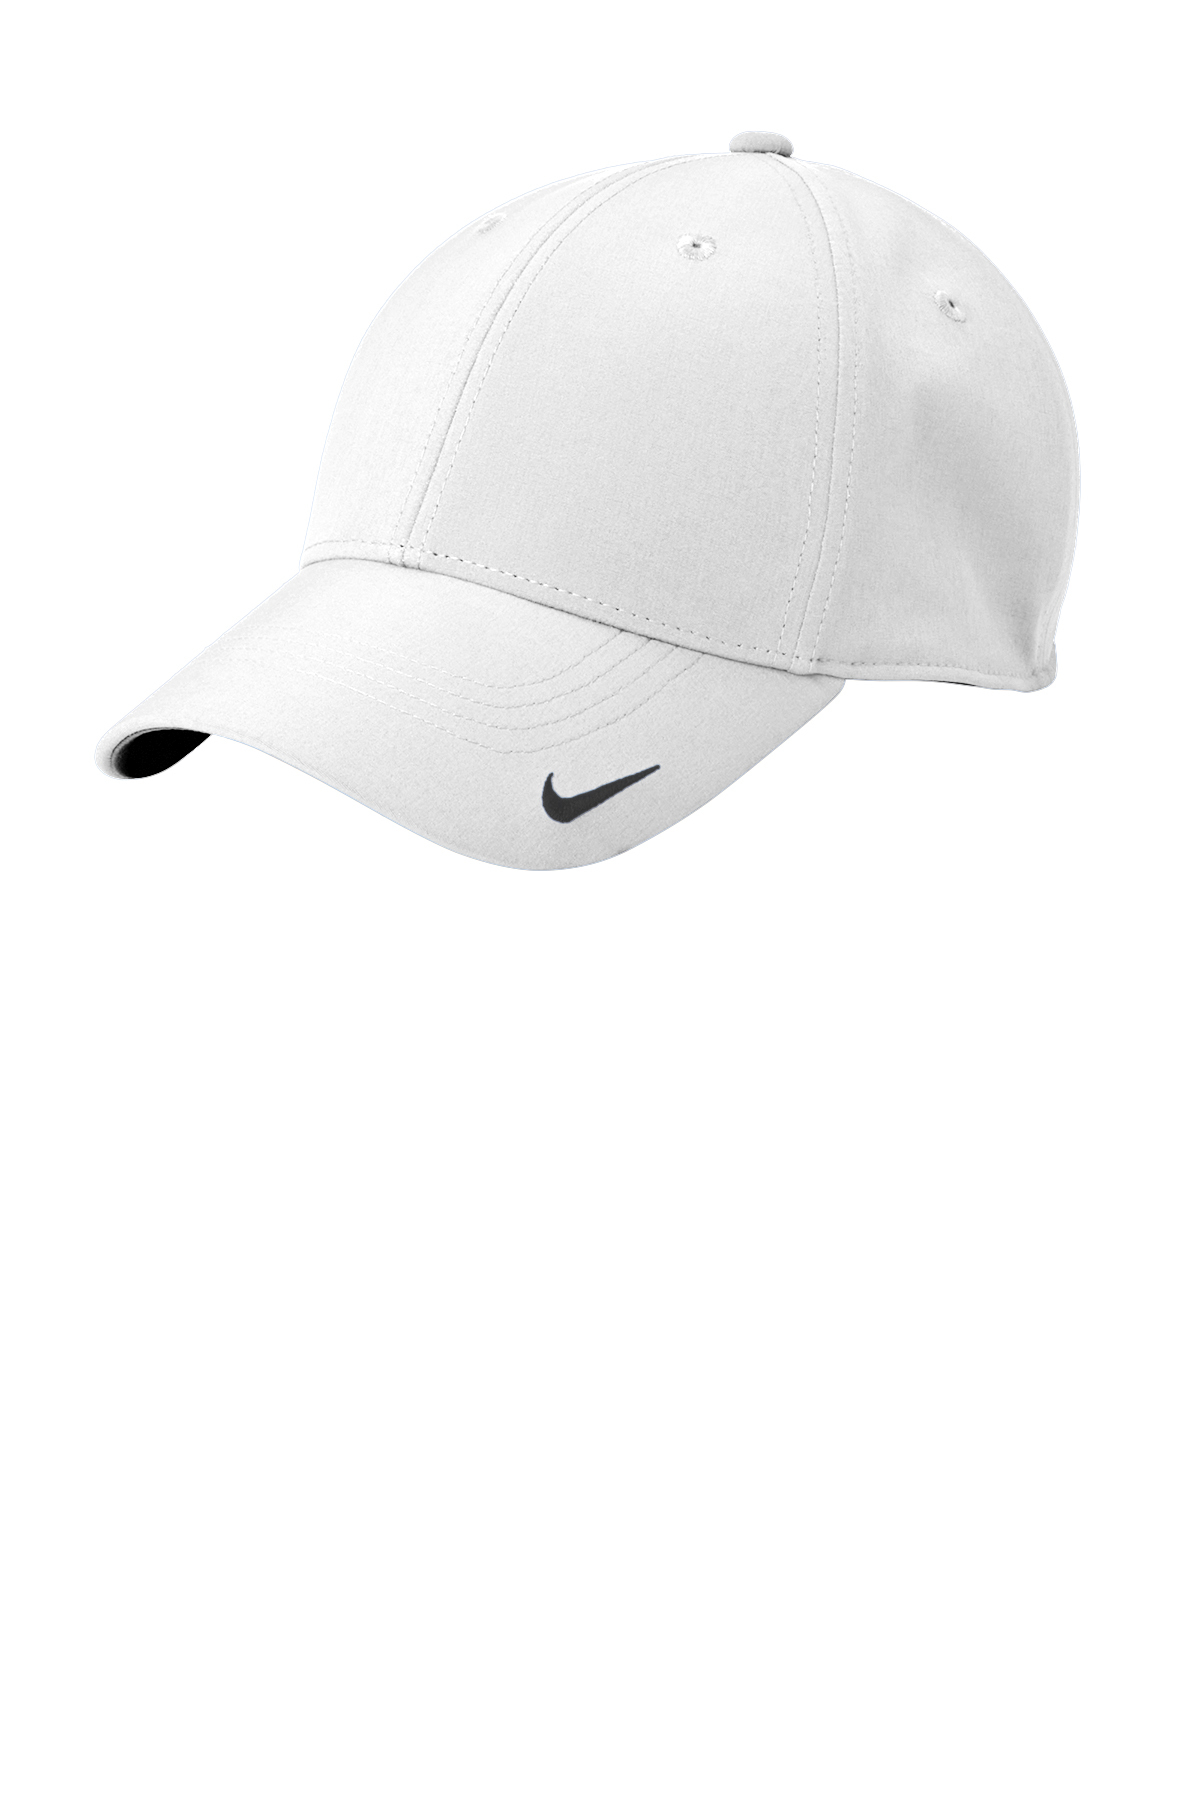 Nike Dri-FIT Legacy Cap | Product | SanMar